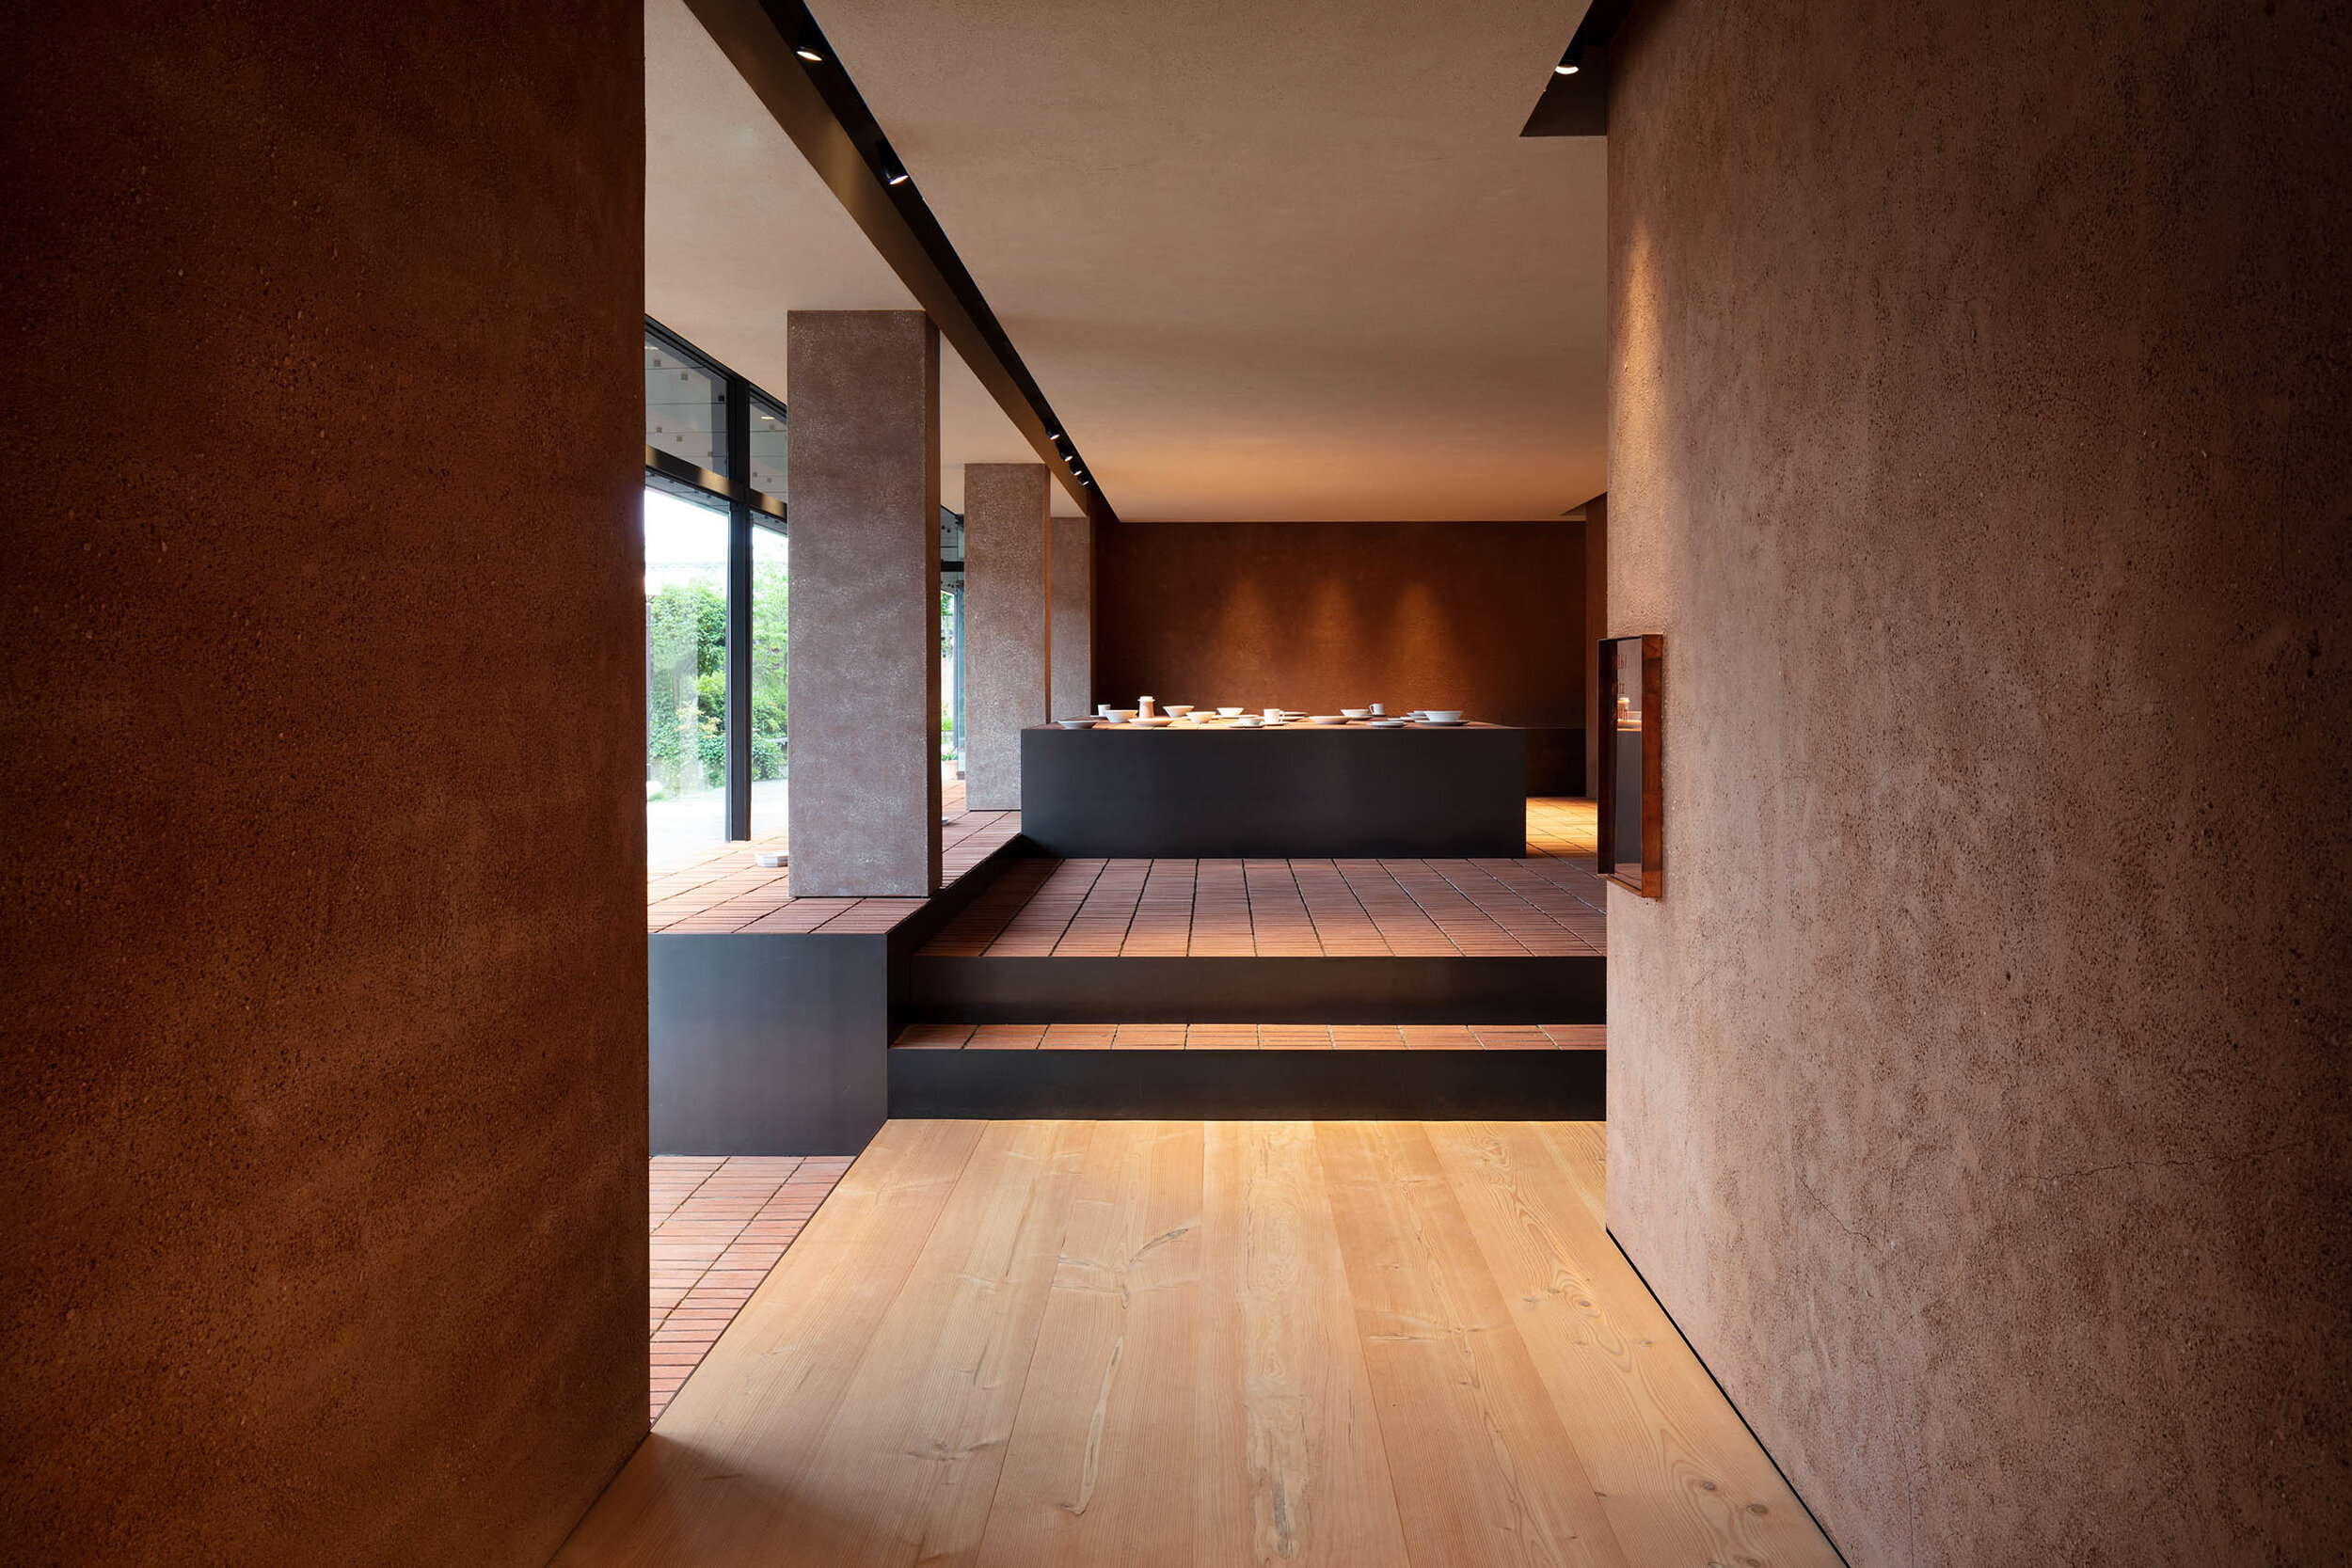  Teruhiro Yanagihara Studio has designed warm interior for 1616/arita japan showroom in Arita, Japan. 